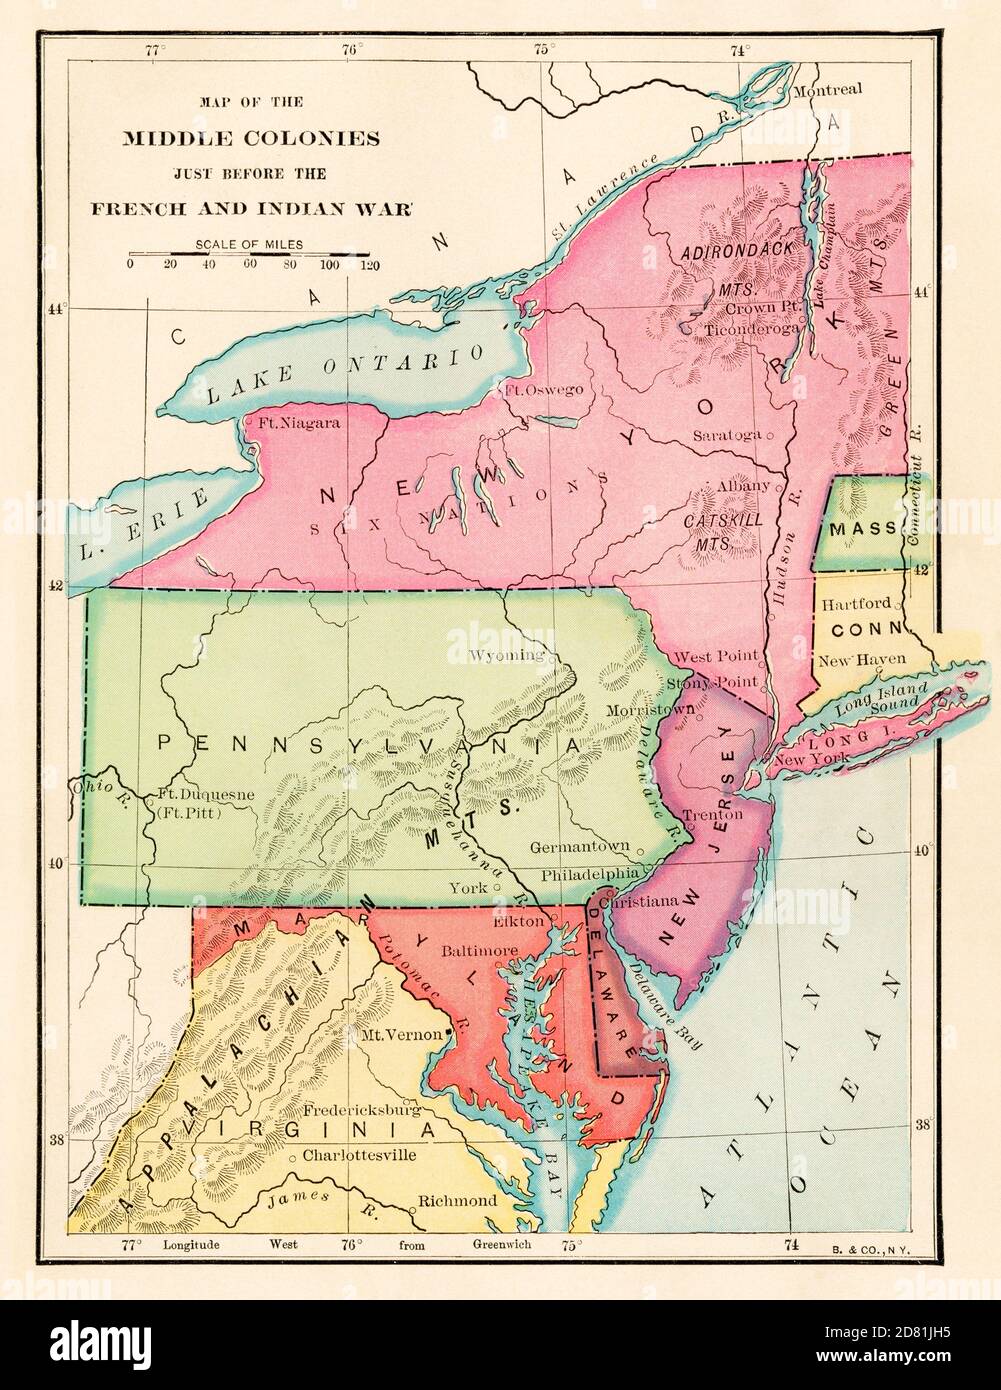 Colonie medie appena prima della guerra francese e indiana, 1750. Mezzitoni a colori Foto Stock